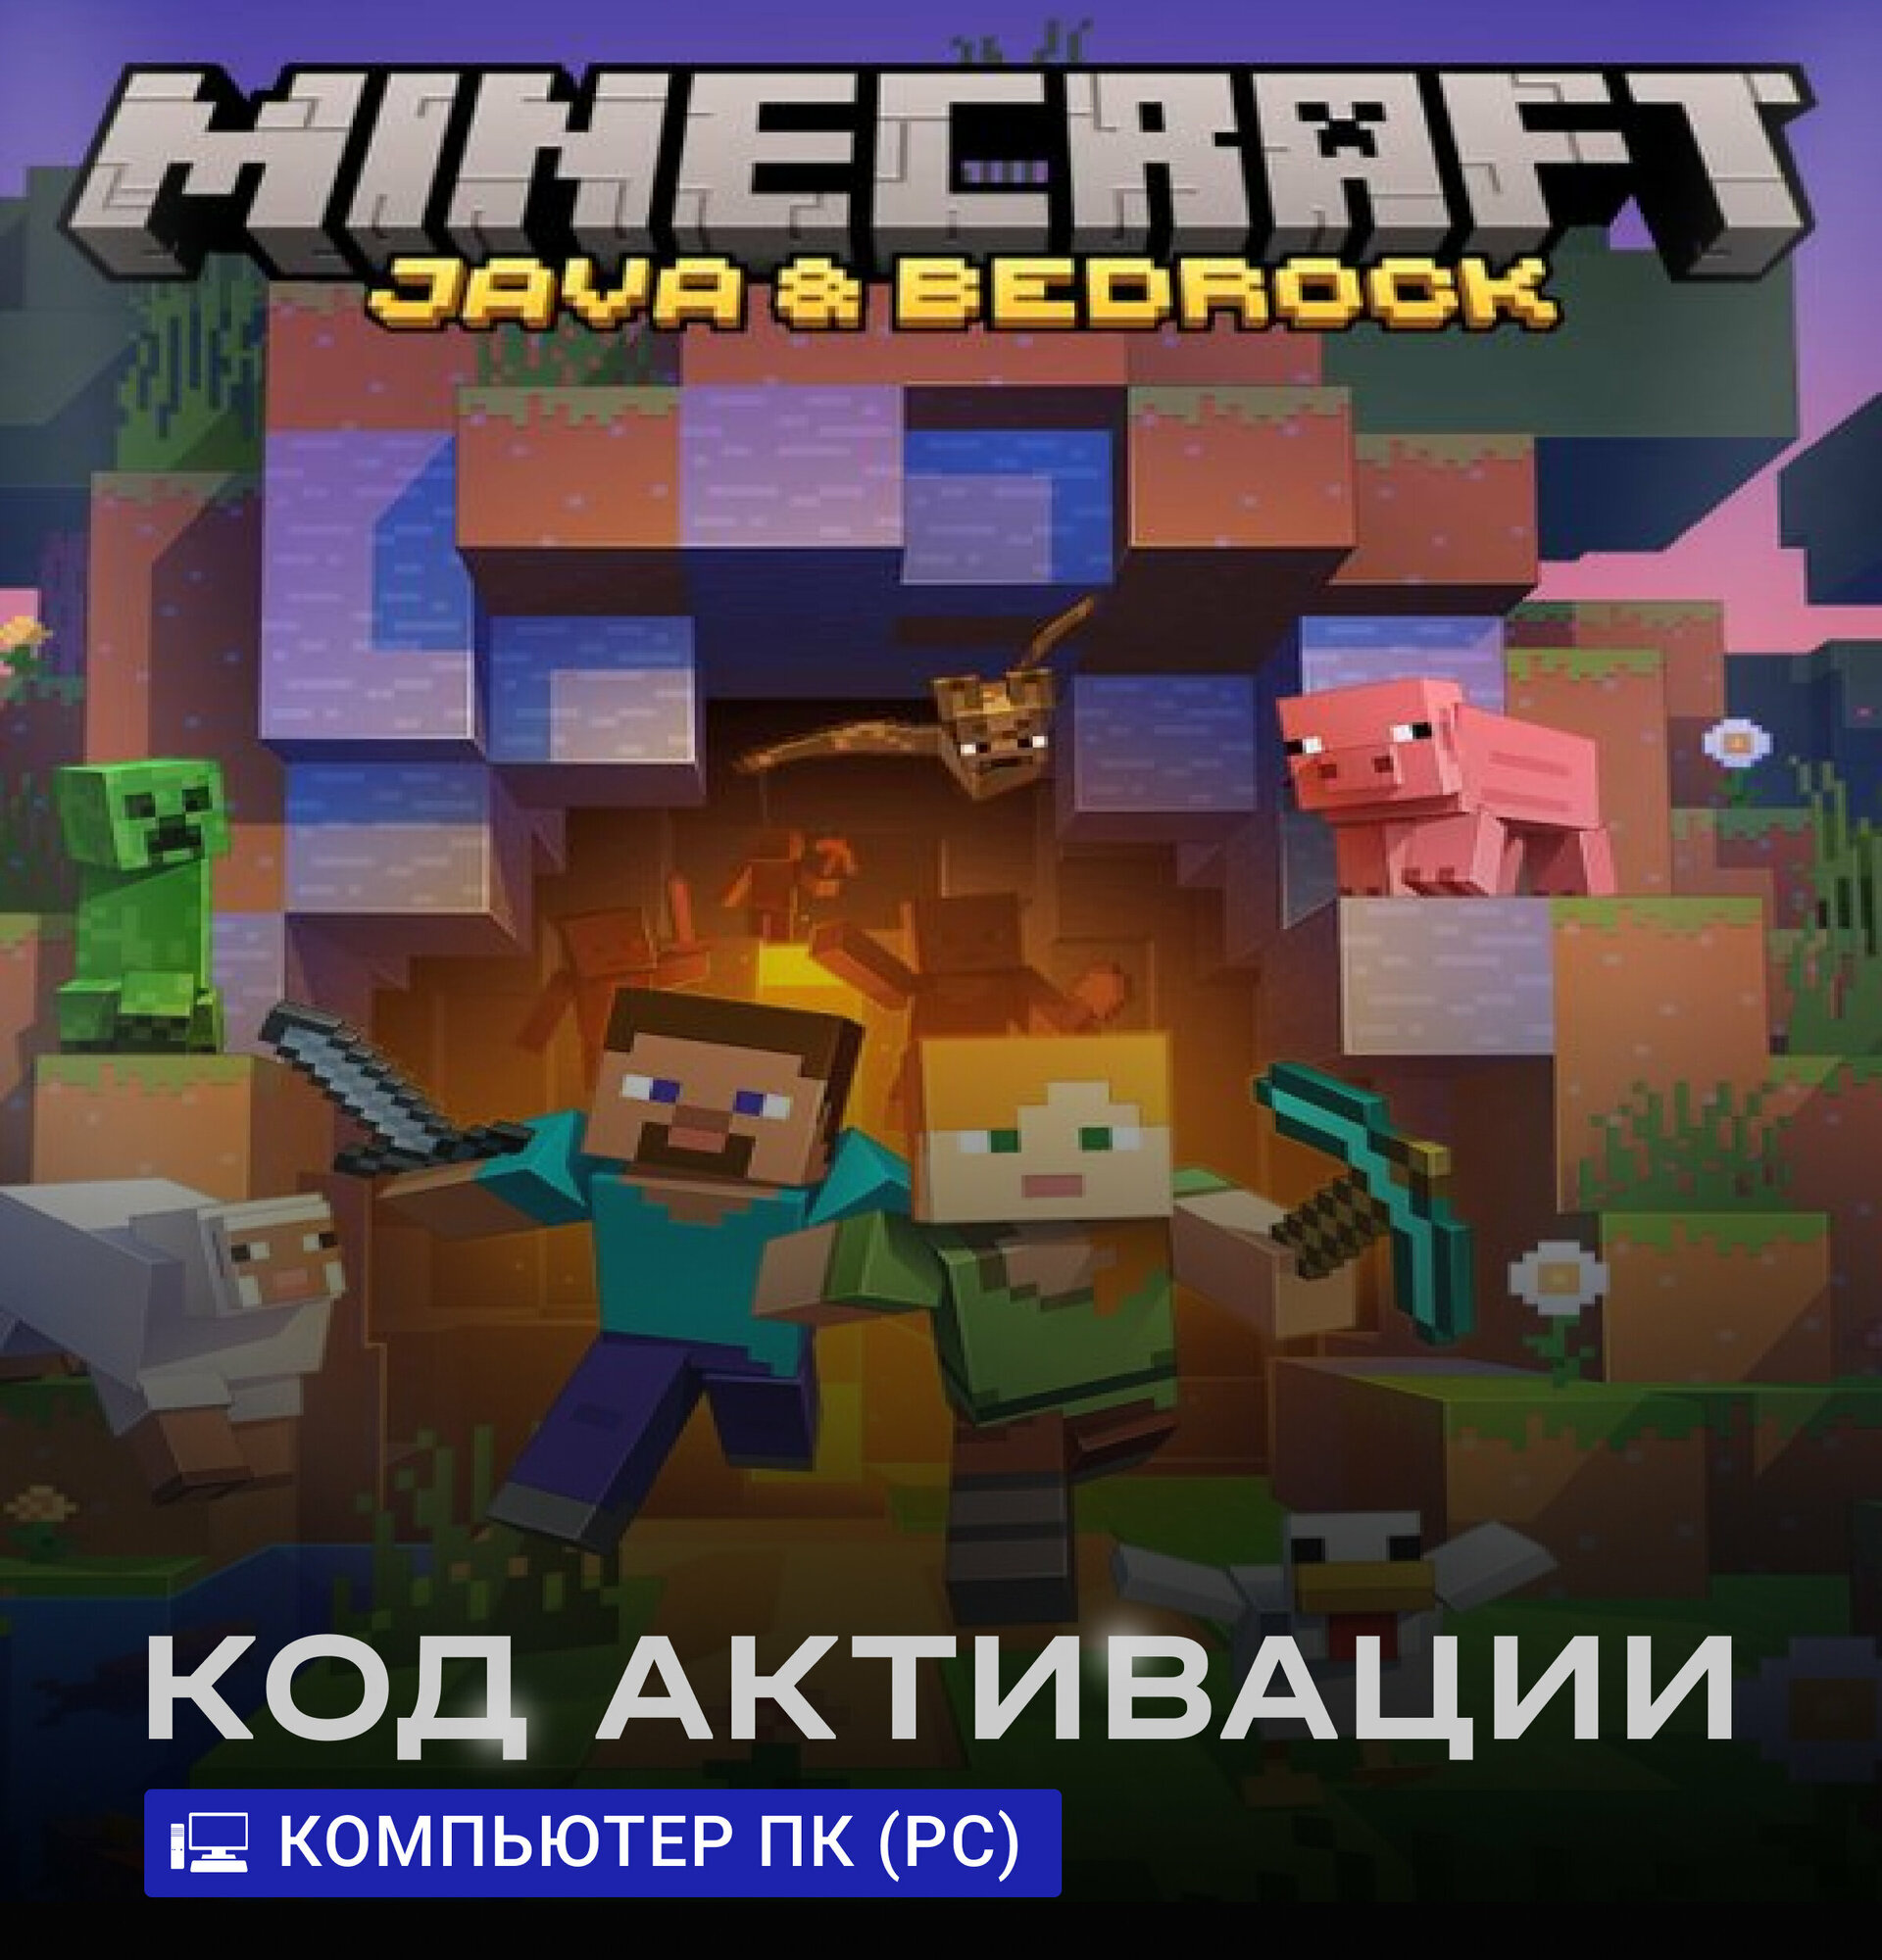 Игра Minecraft Java Bedrock Edition для компьютера Windows 10/11 ПК (PC) (Турция), Русская версия, электронный ключ